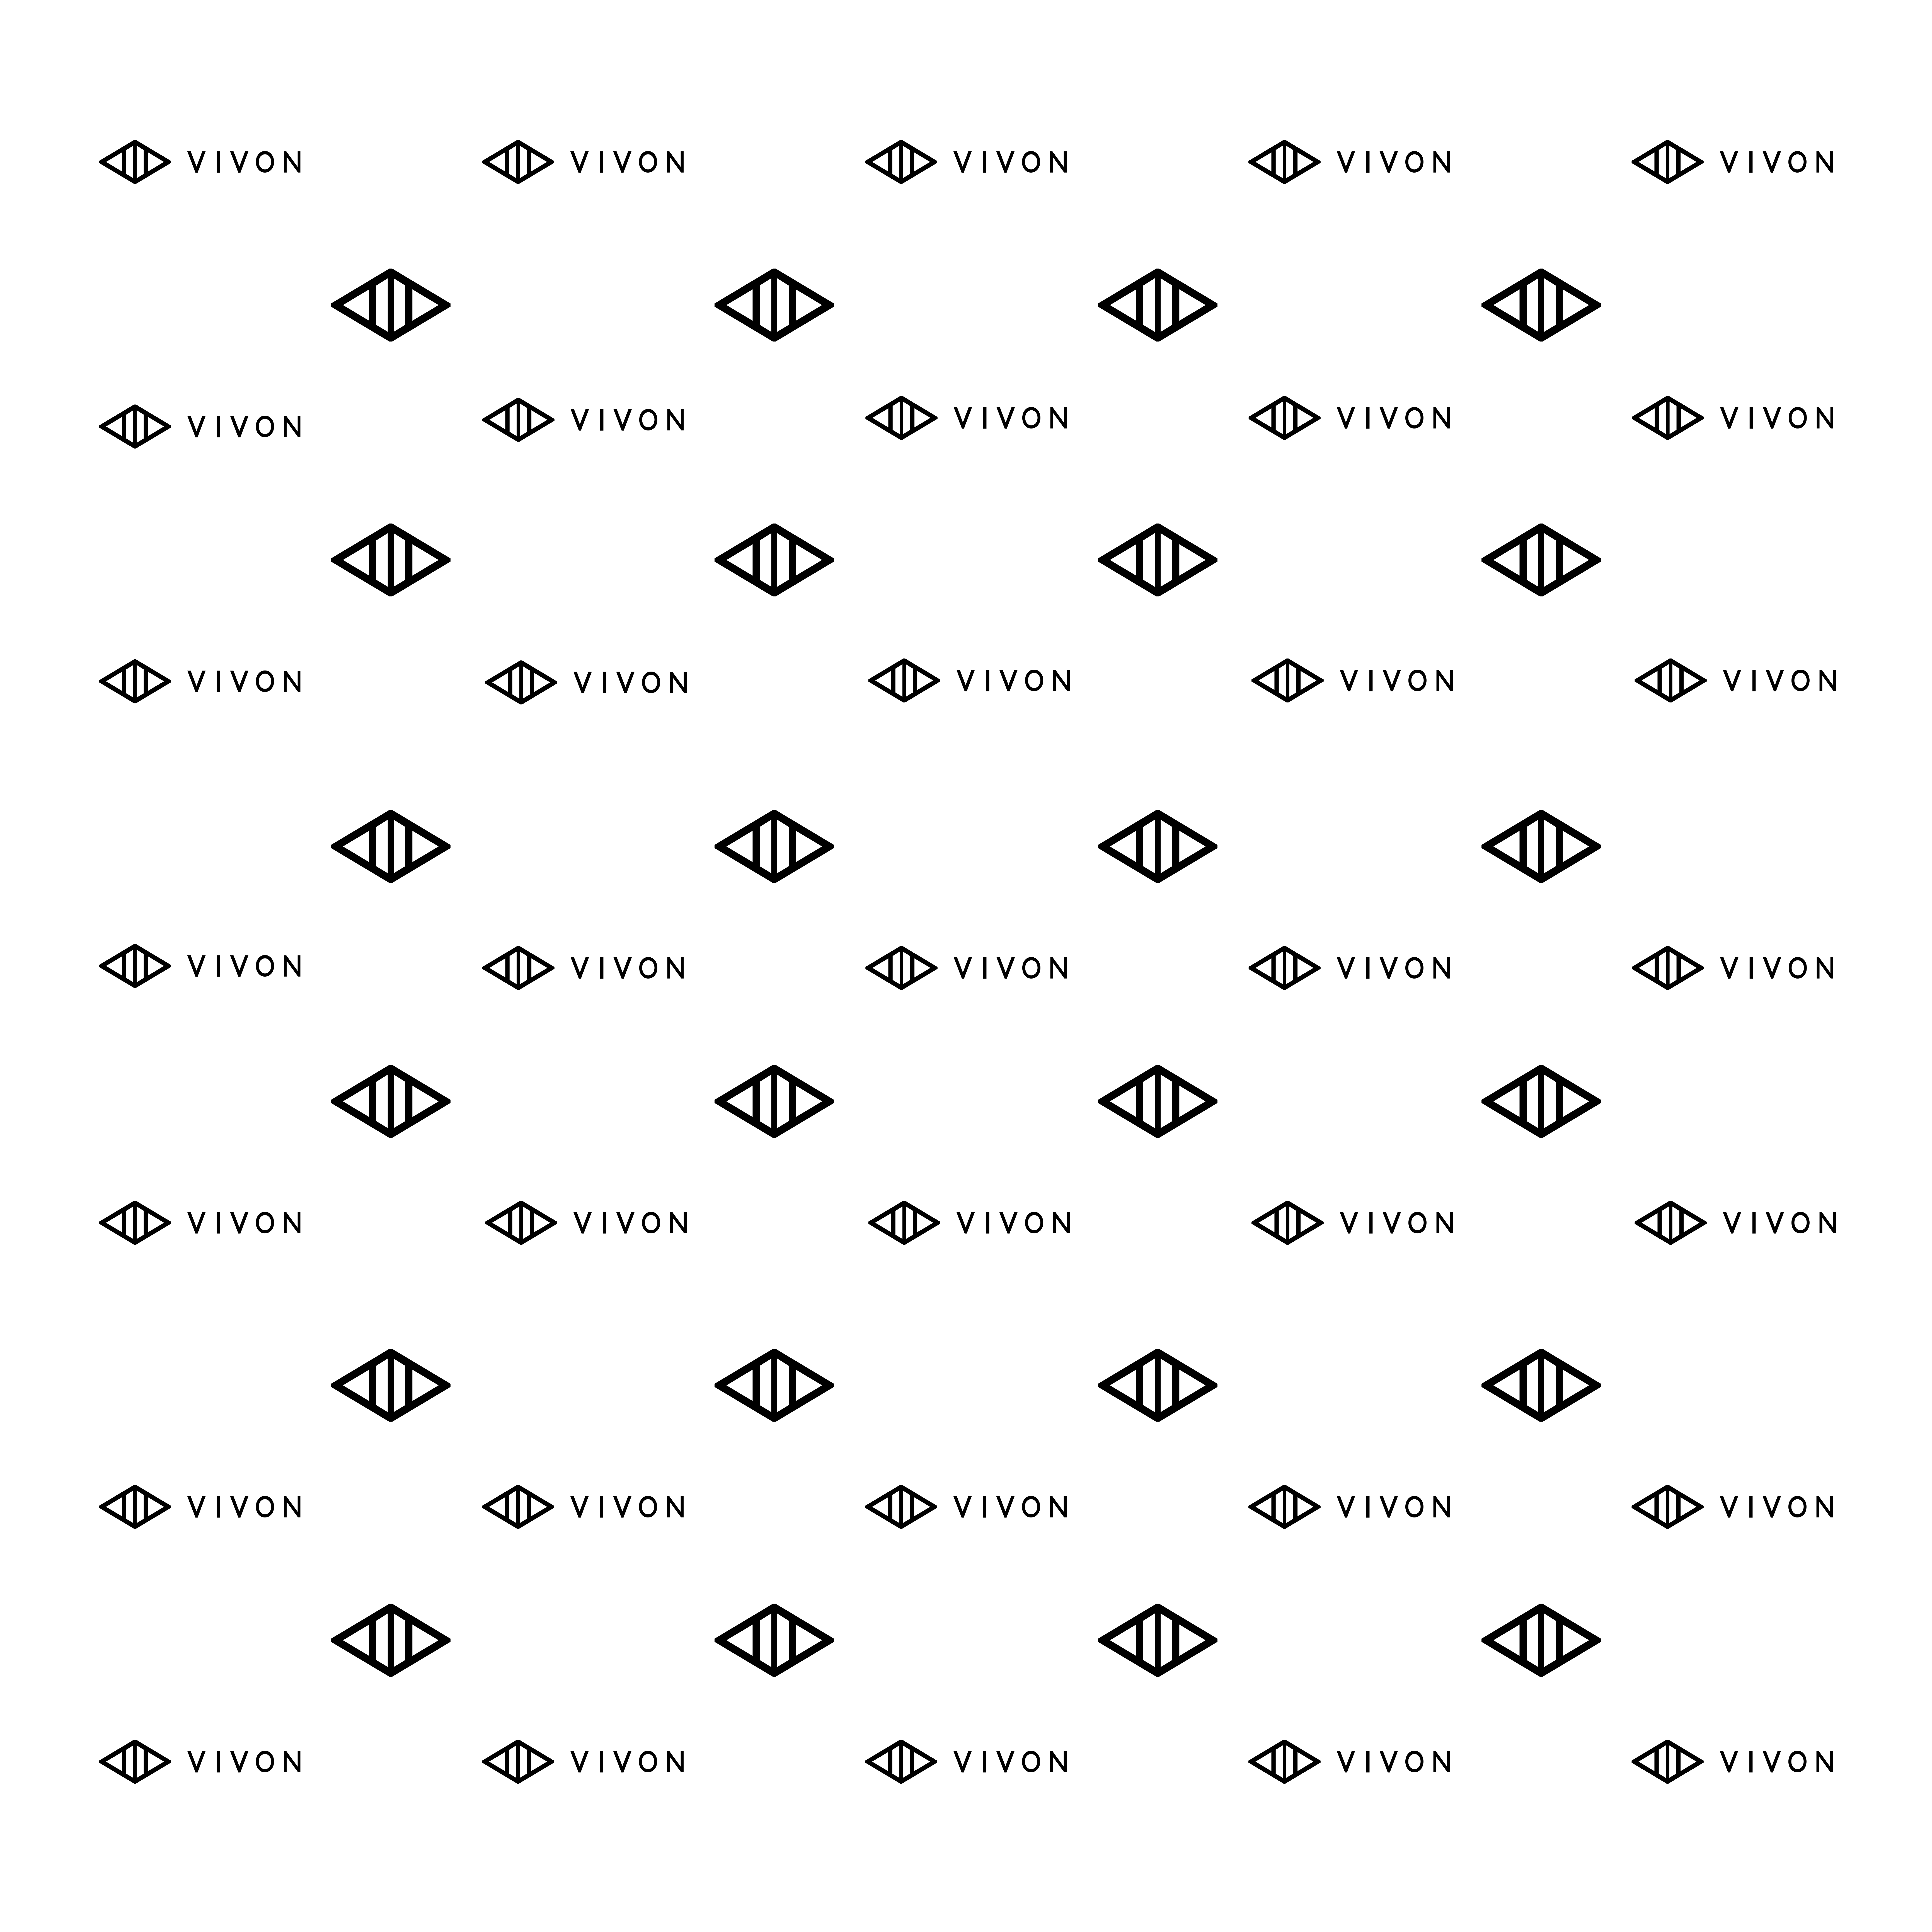 VIVON banner pattern